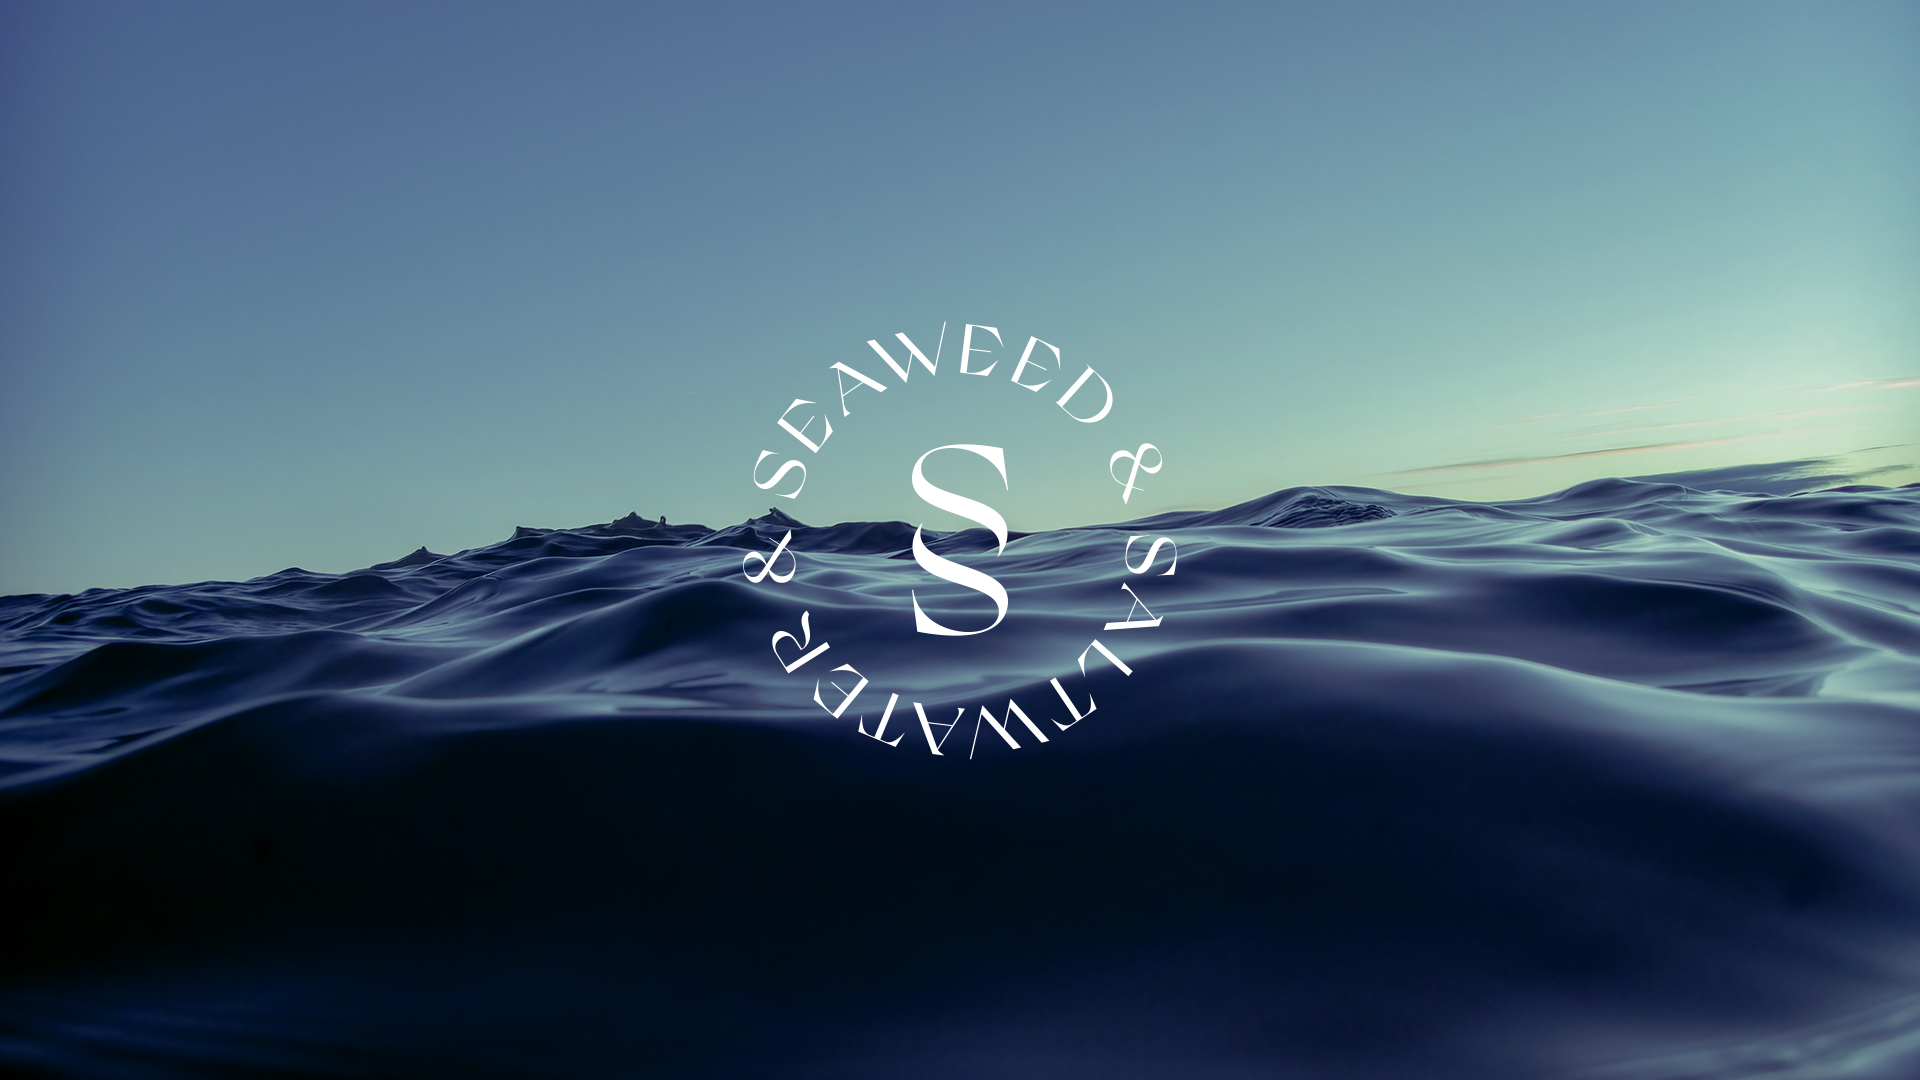 Cover image: Seaweed & Saltwater — Branding